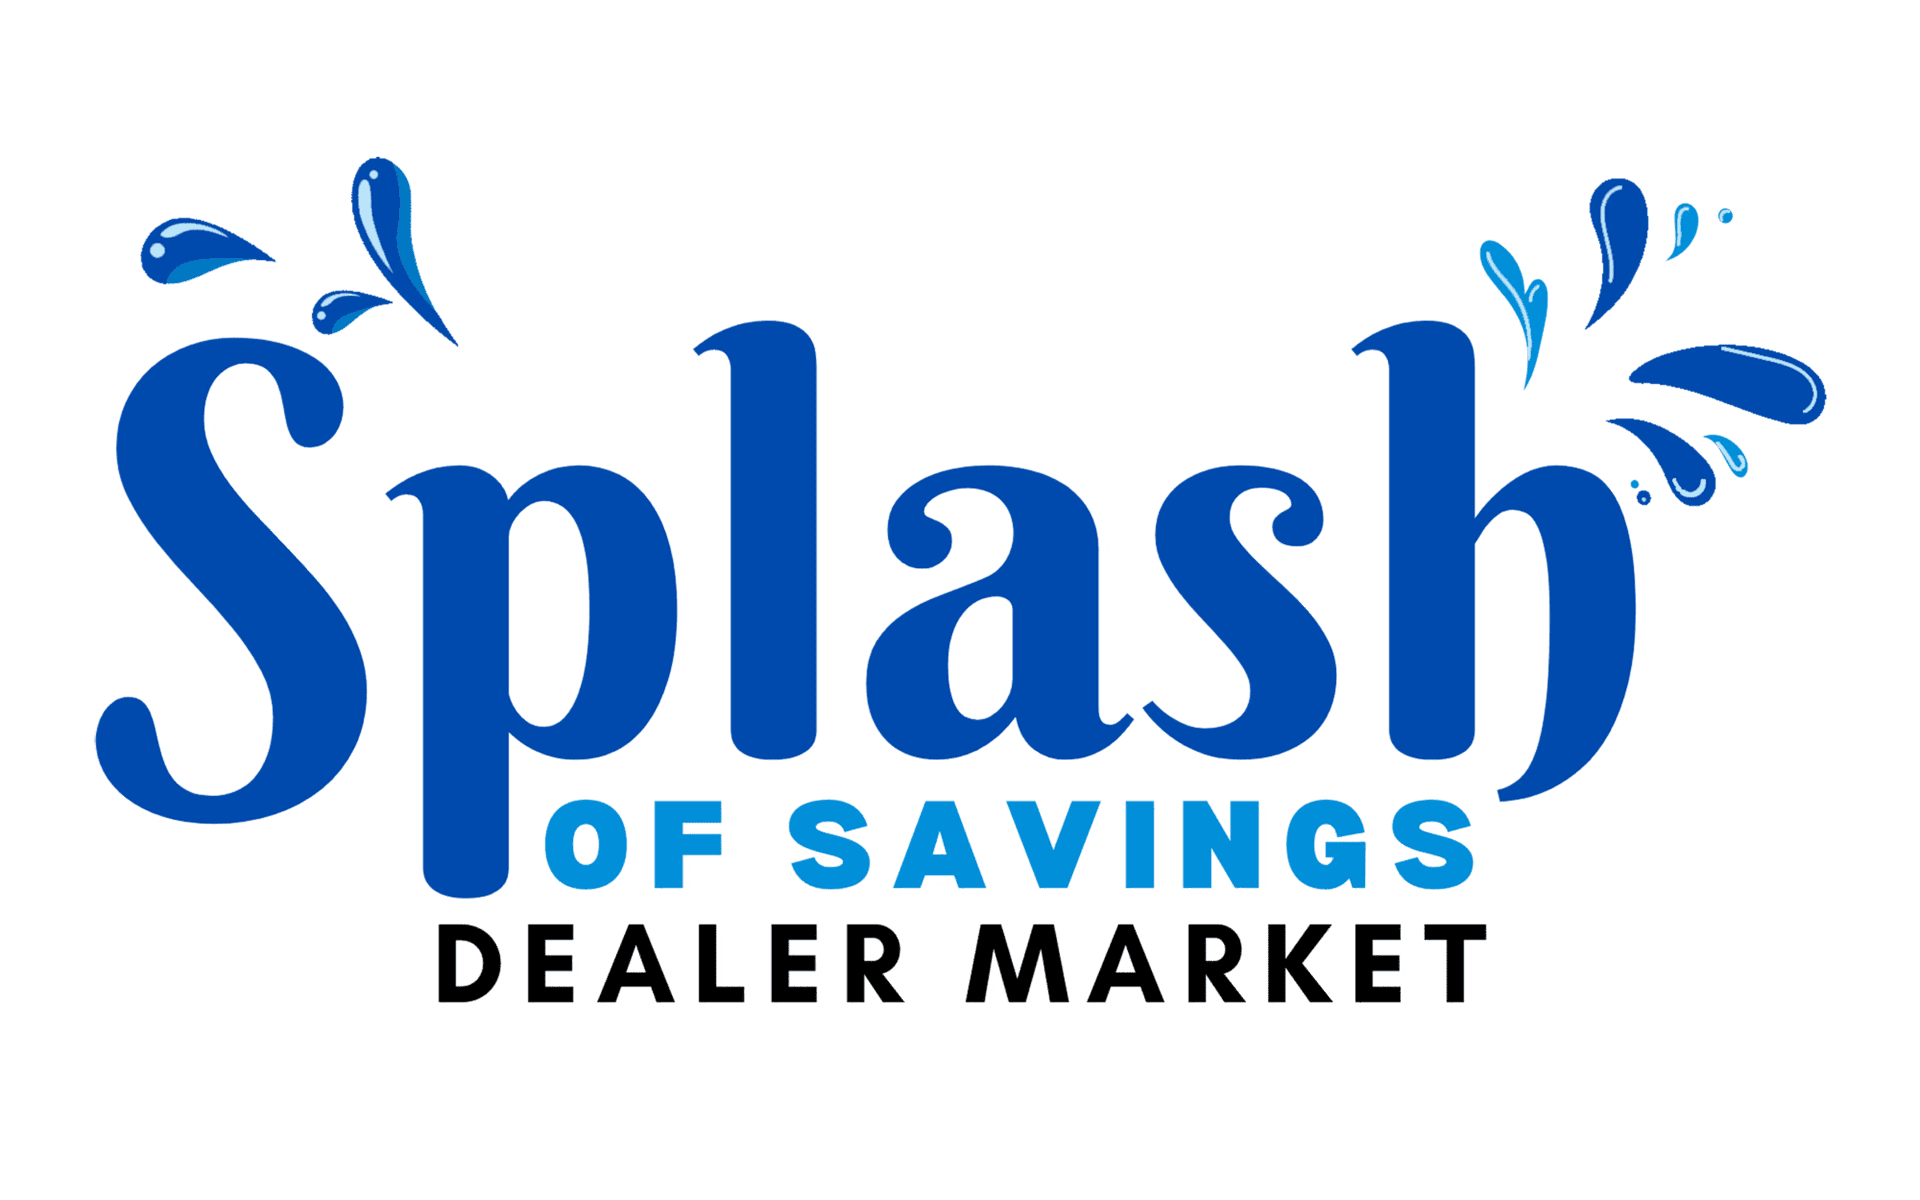 Summer-Splash-of-Savings-Dealer-Market-logo4-white-shadow